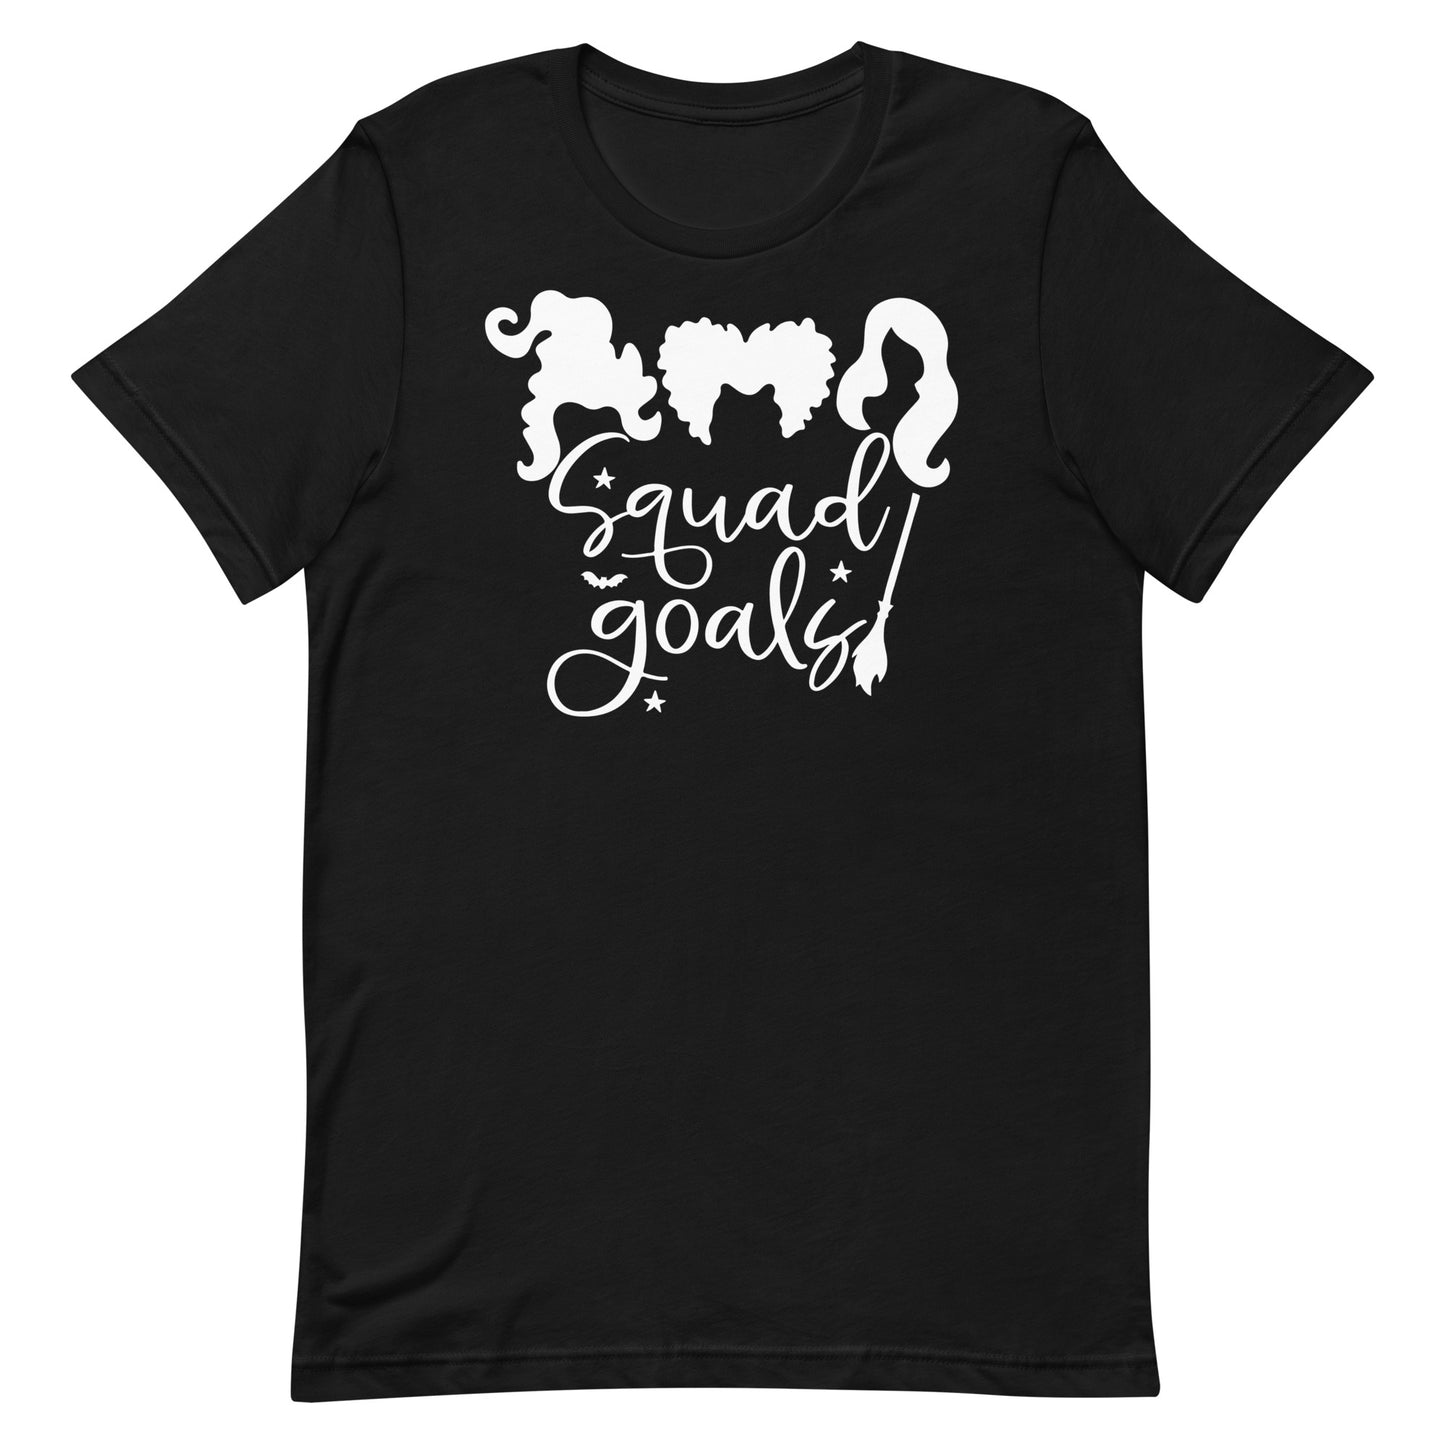 Squad Goals- T-shirt